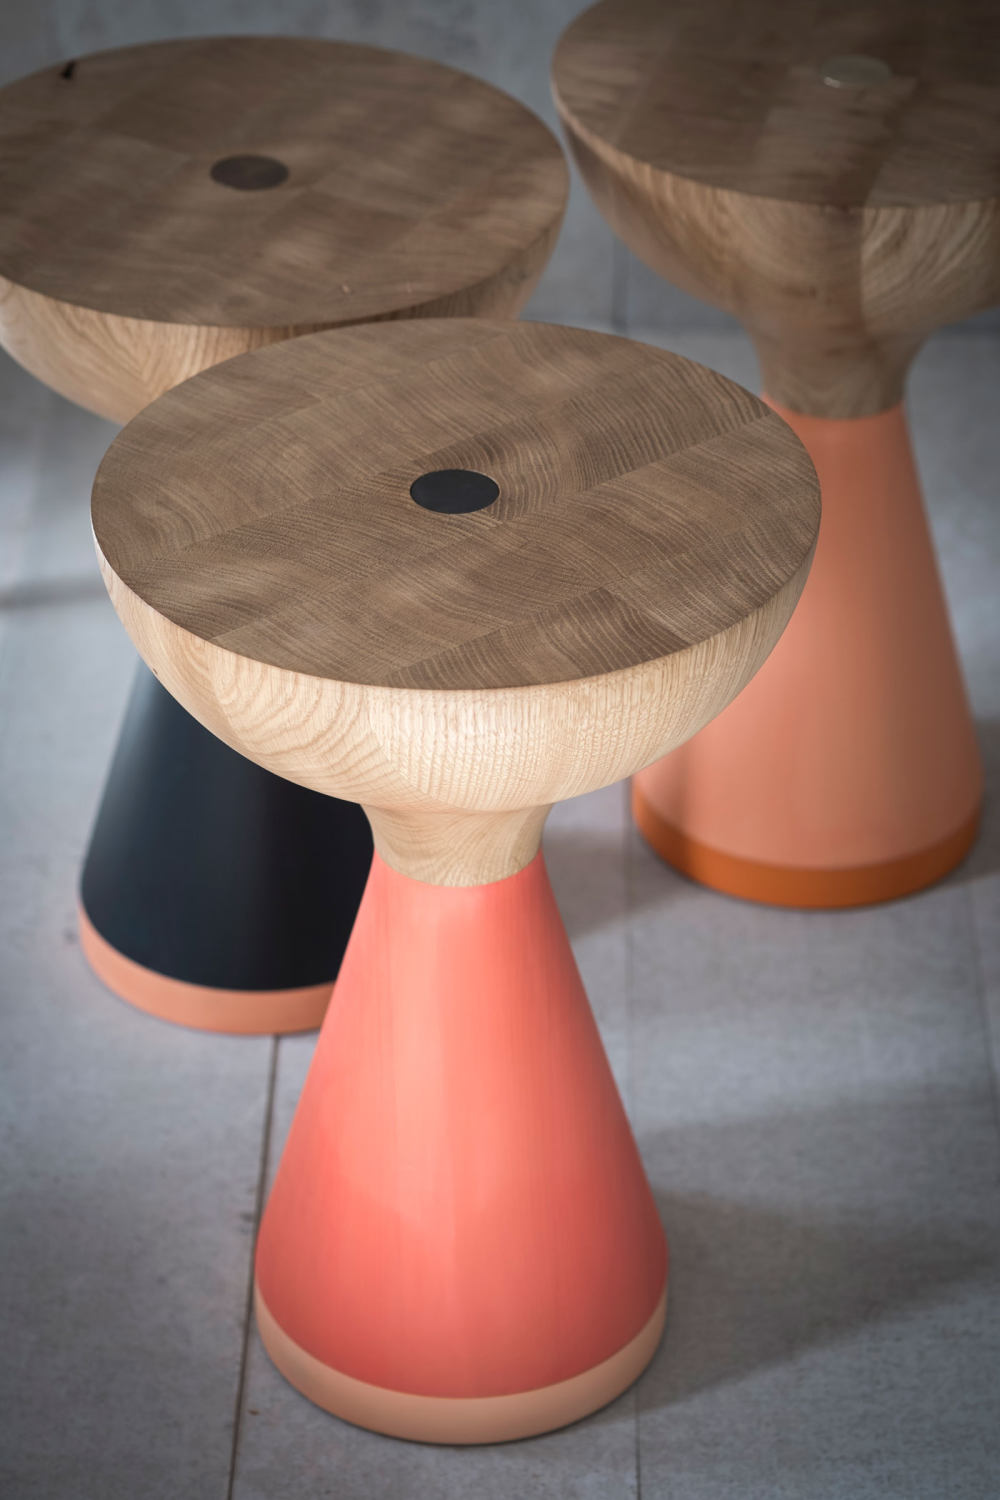 wooden-furniture-by-pinch-design-1.jpg